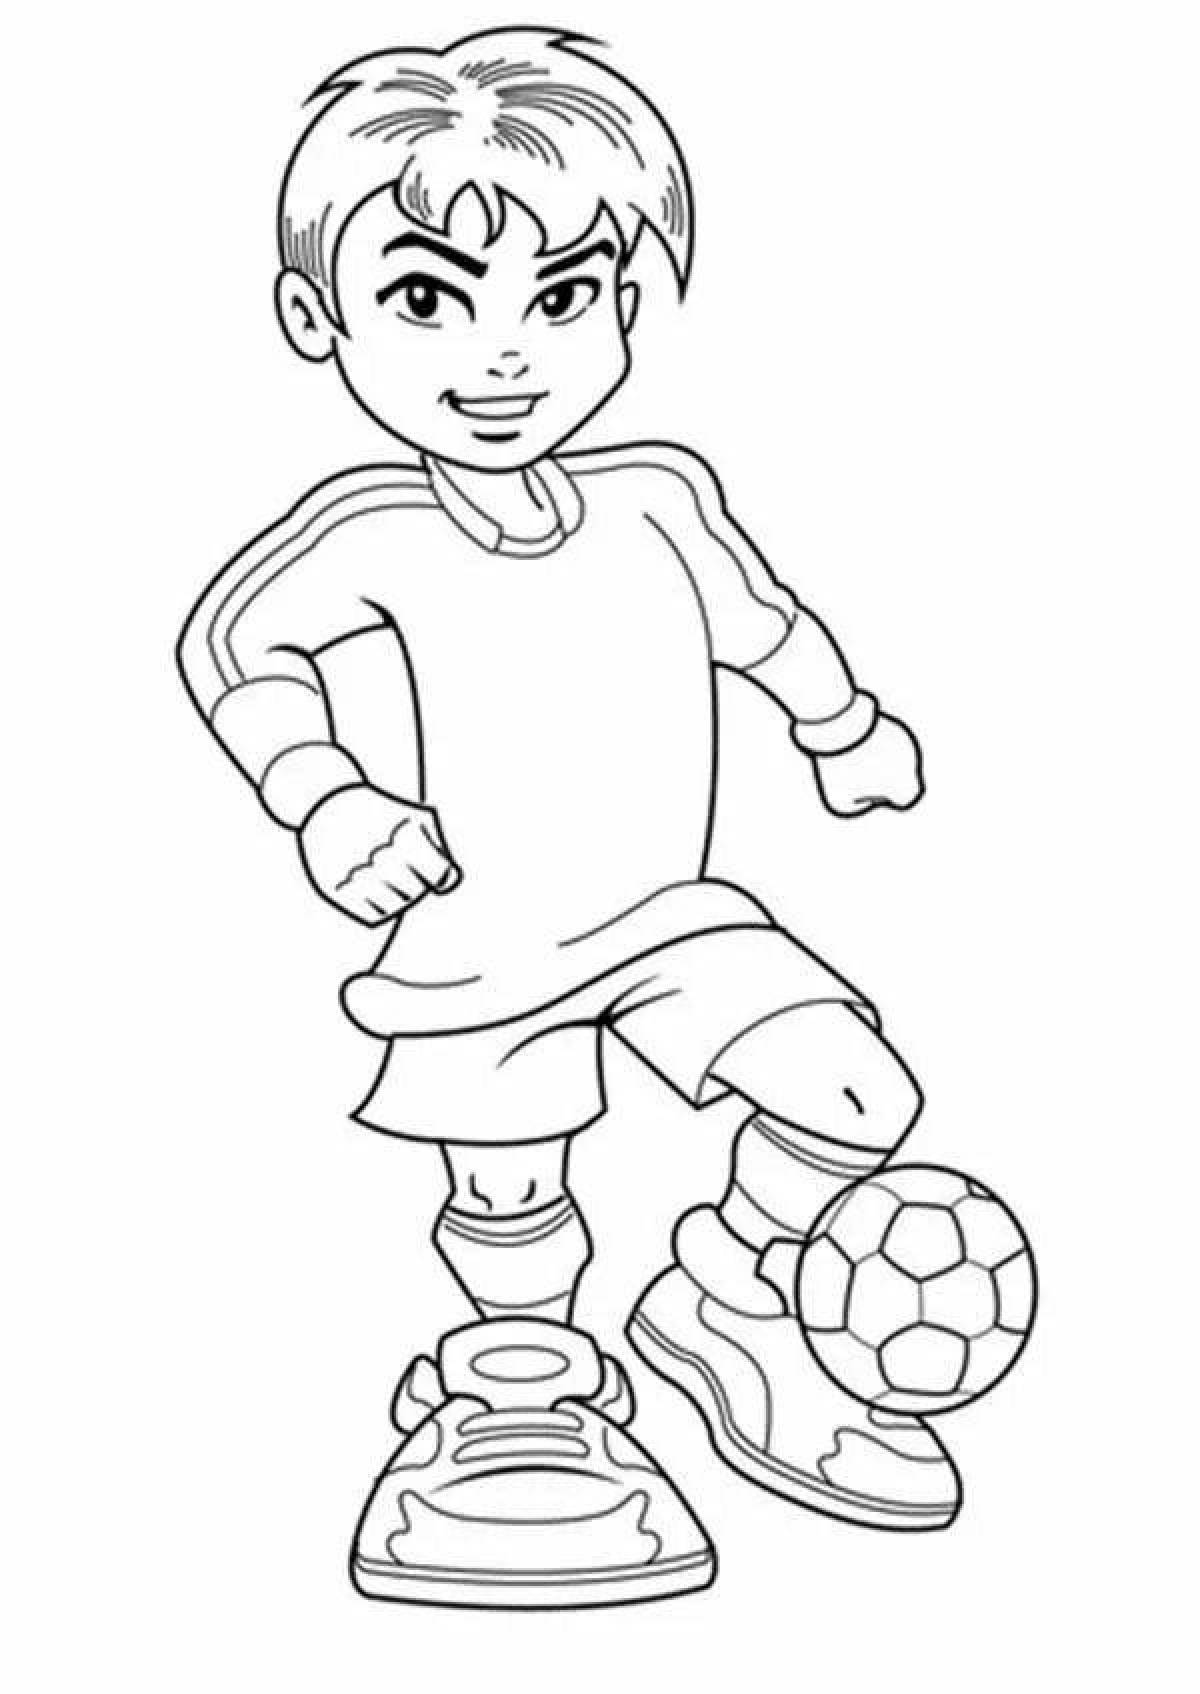 Раскраска веселый футболист для детей